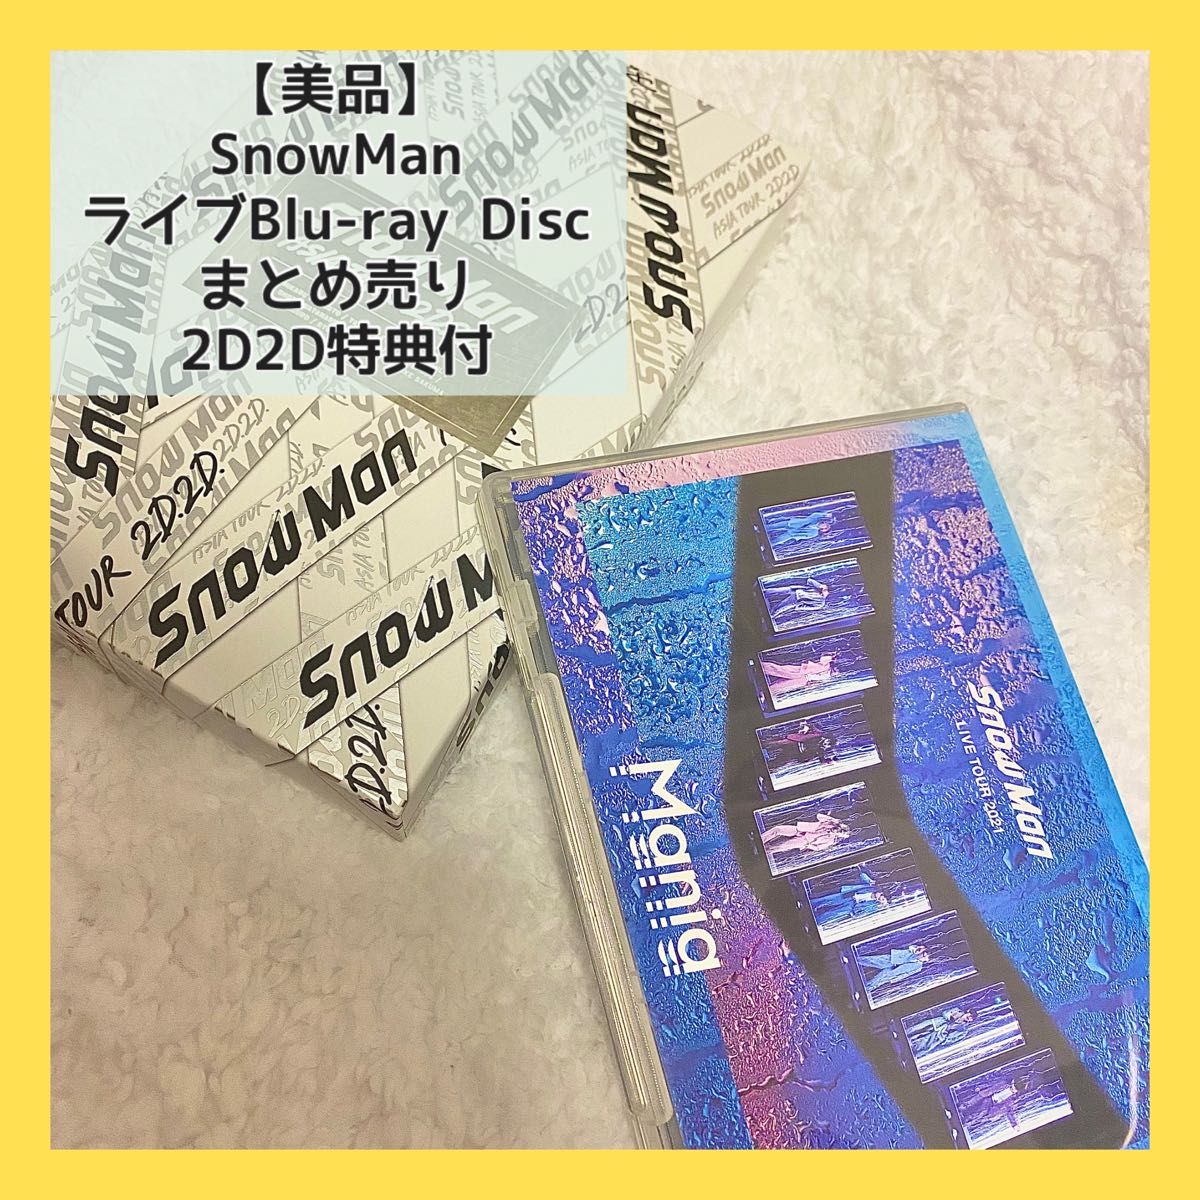 【美品】SnowManスノーマンライブDVD Blu-rayブルーレイまとめ売り2D2DMania特典付 Blu-ray Disc